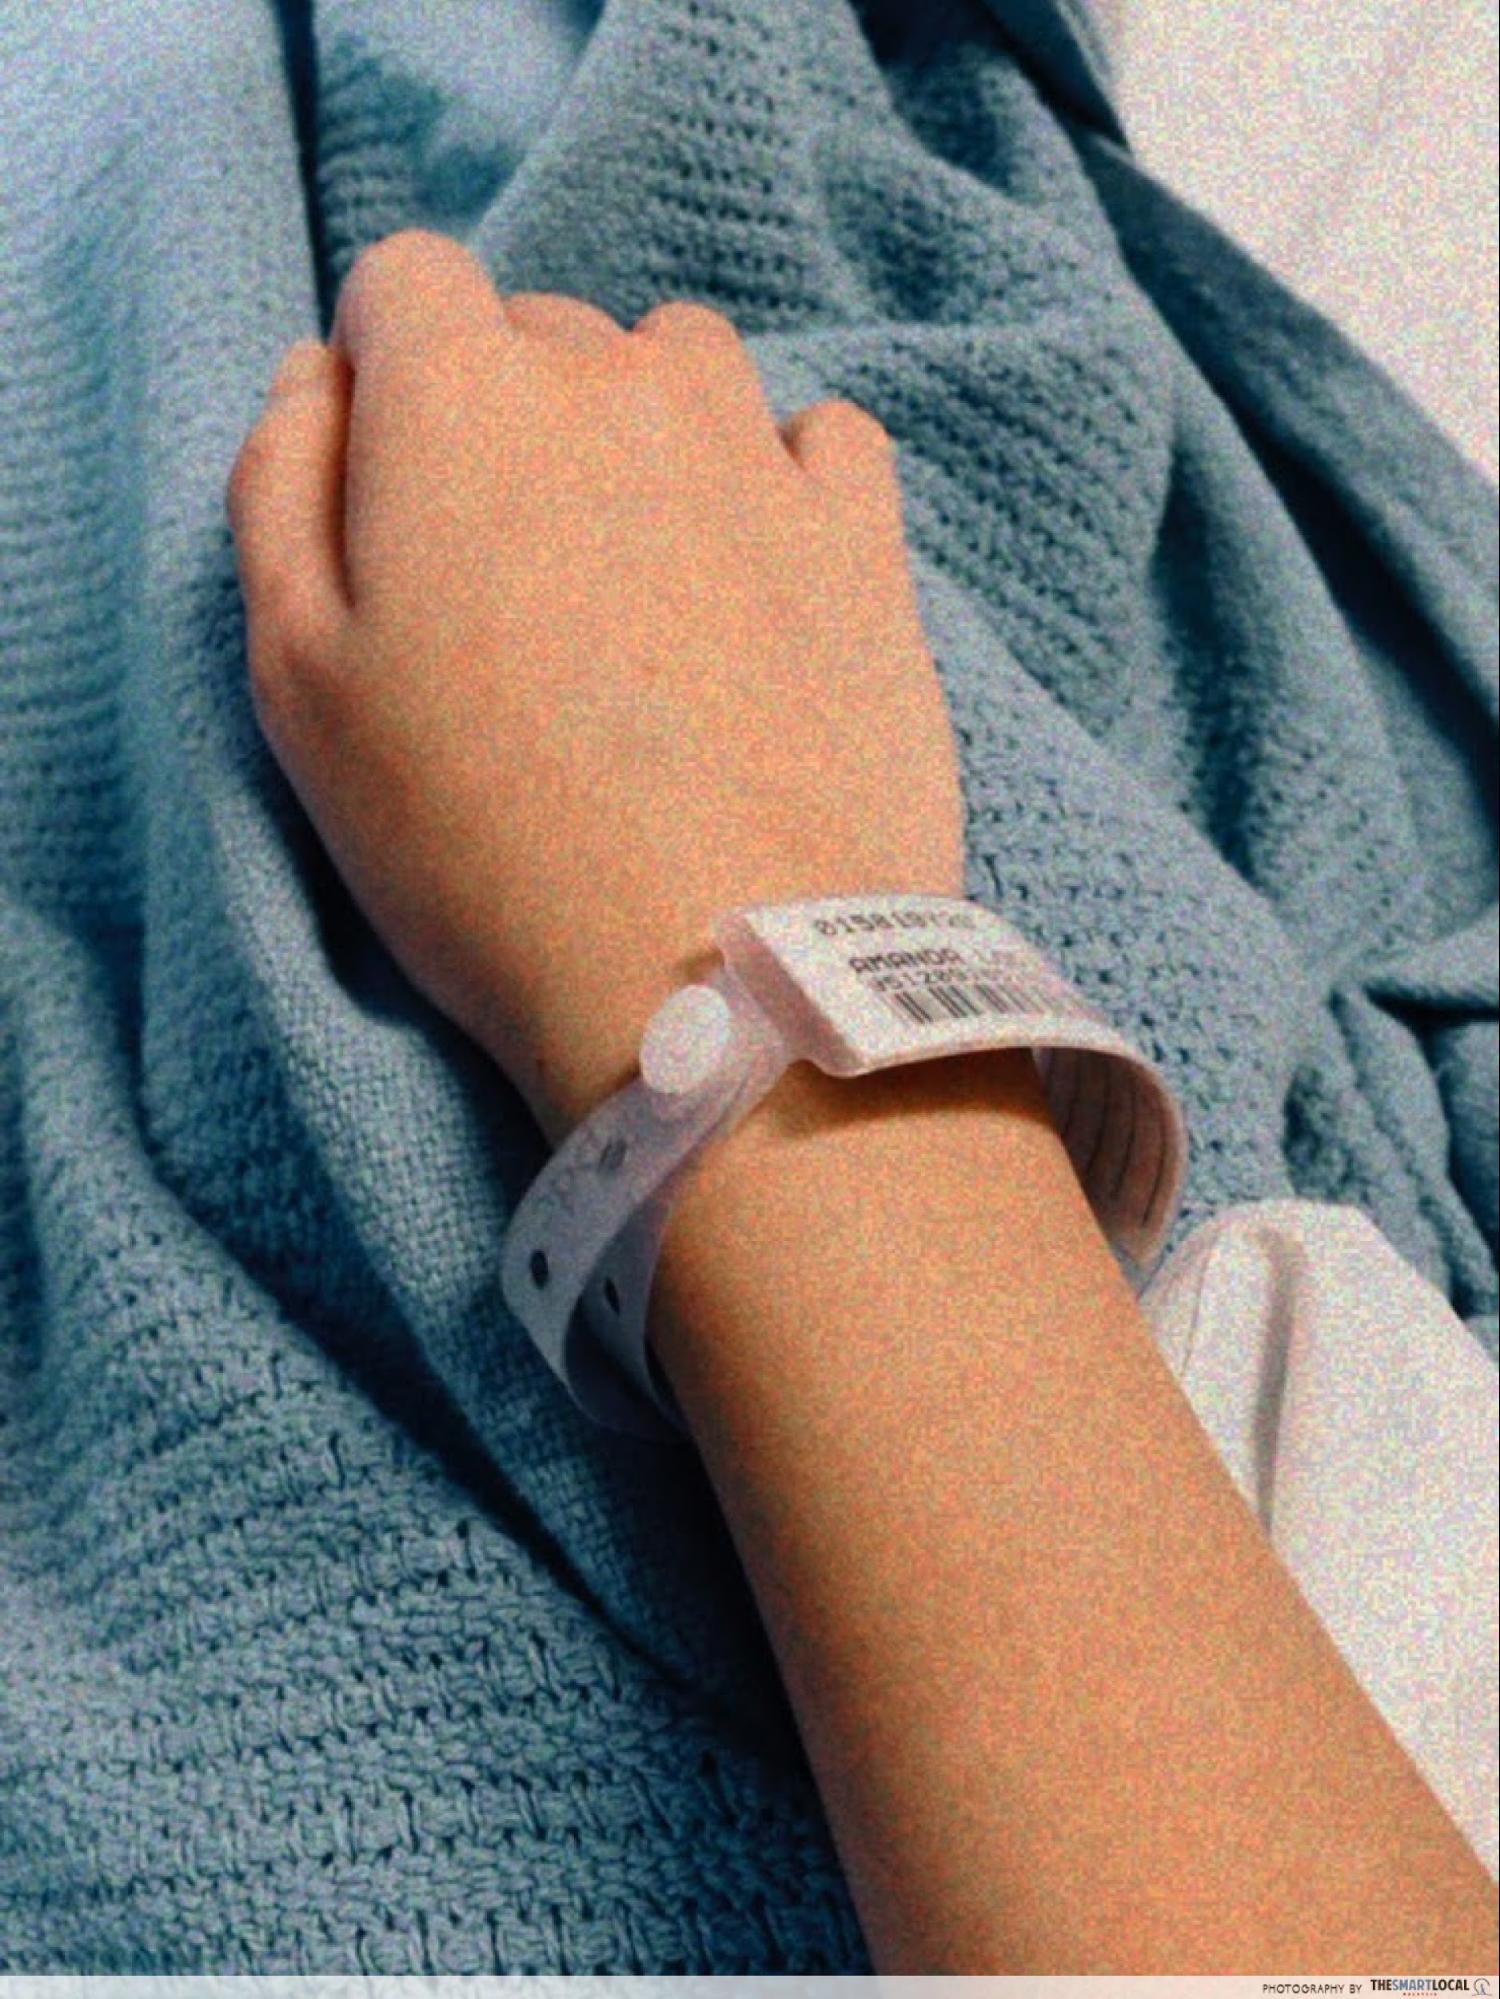 hospital admission tag on wrist